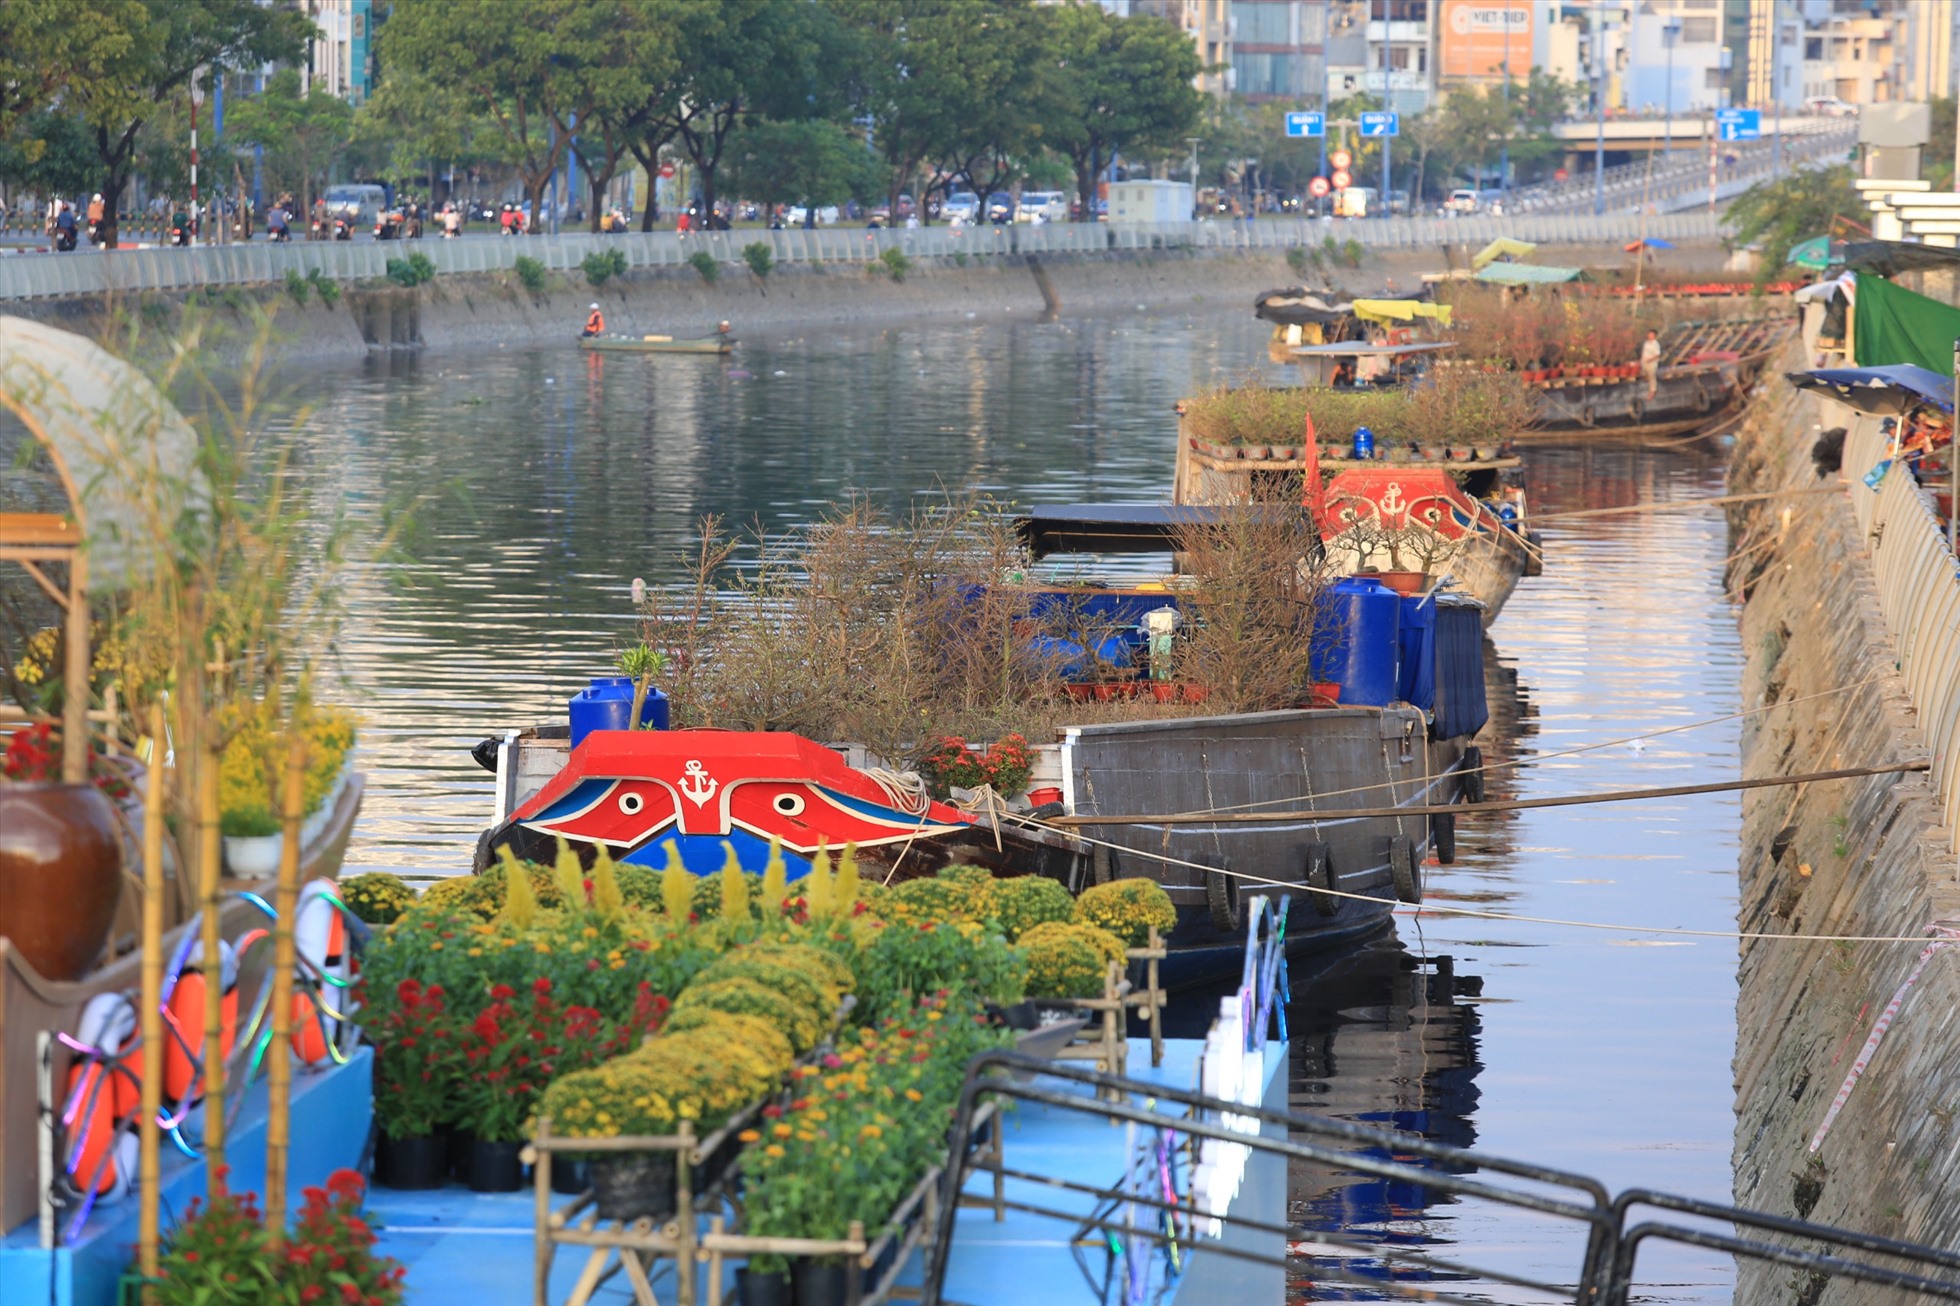 Những chiếc thuyền xếp thành hàng bên bờ kênh Tàu Hủ, tạo thành chợ hoa xuân độc đáo và ấn tượng nhất trong tất cả các chợ hoa ở Sài Gòn. Những chiếc thuyền xếp thành hàng bên bờ kênh Tàu Hủ, tạo thành chợ hoa xuân độc đáo và ấn tượng nhất trong tất cả các chợ hoa ở TPHCM